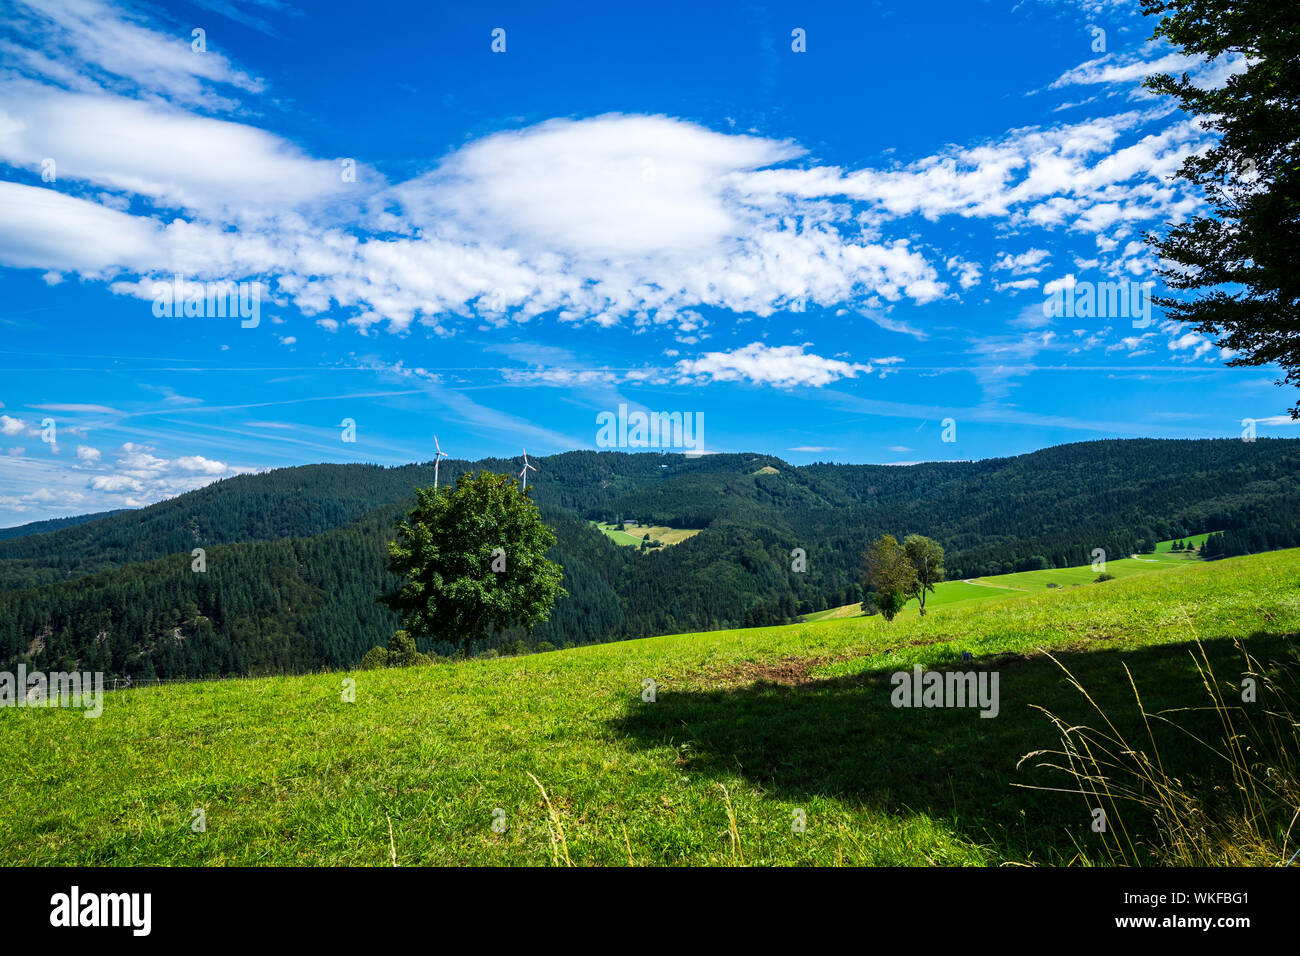 In Germania, in vista di picco di schauinsland mountain nella foresta nera natura paesaggio nei pressi di Freiburg im Breisgau in estate con cielo blu, perfetta per le escursioni Foto Stock